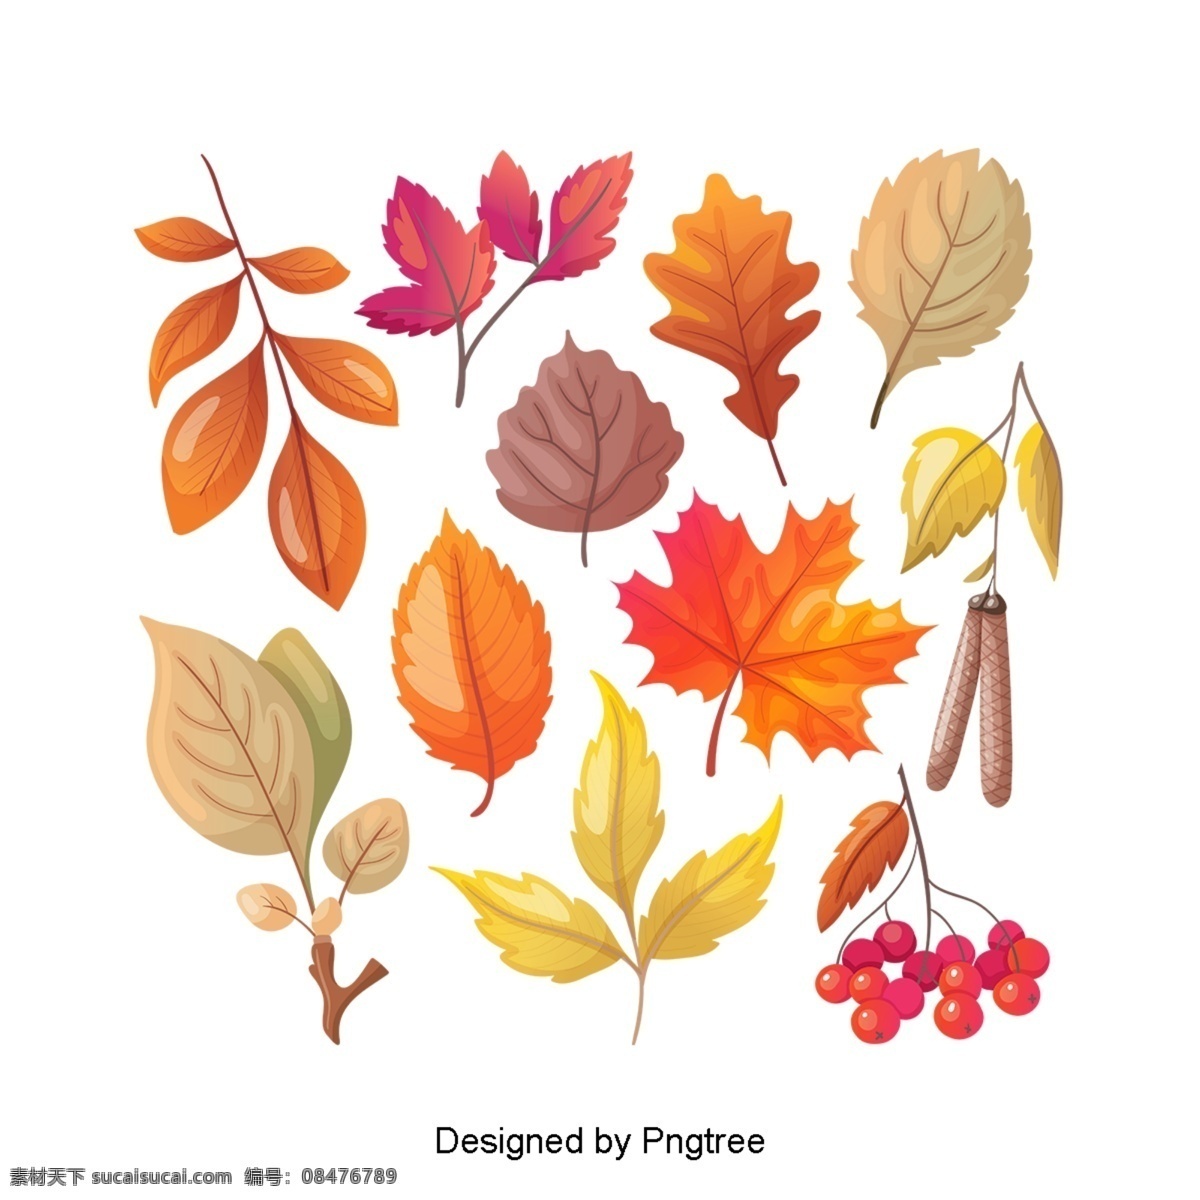 卡通 简单 手绘 秋叶 图案 简约 季节 秋天 树叶 植物 自然 装饰设计